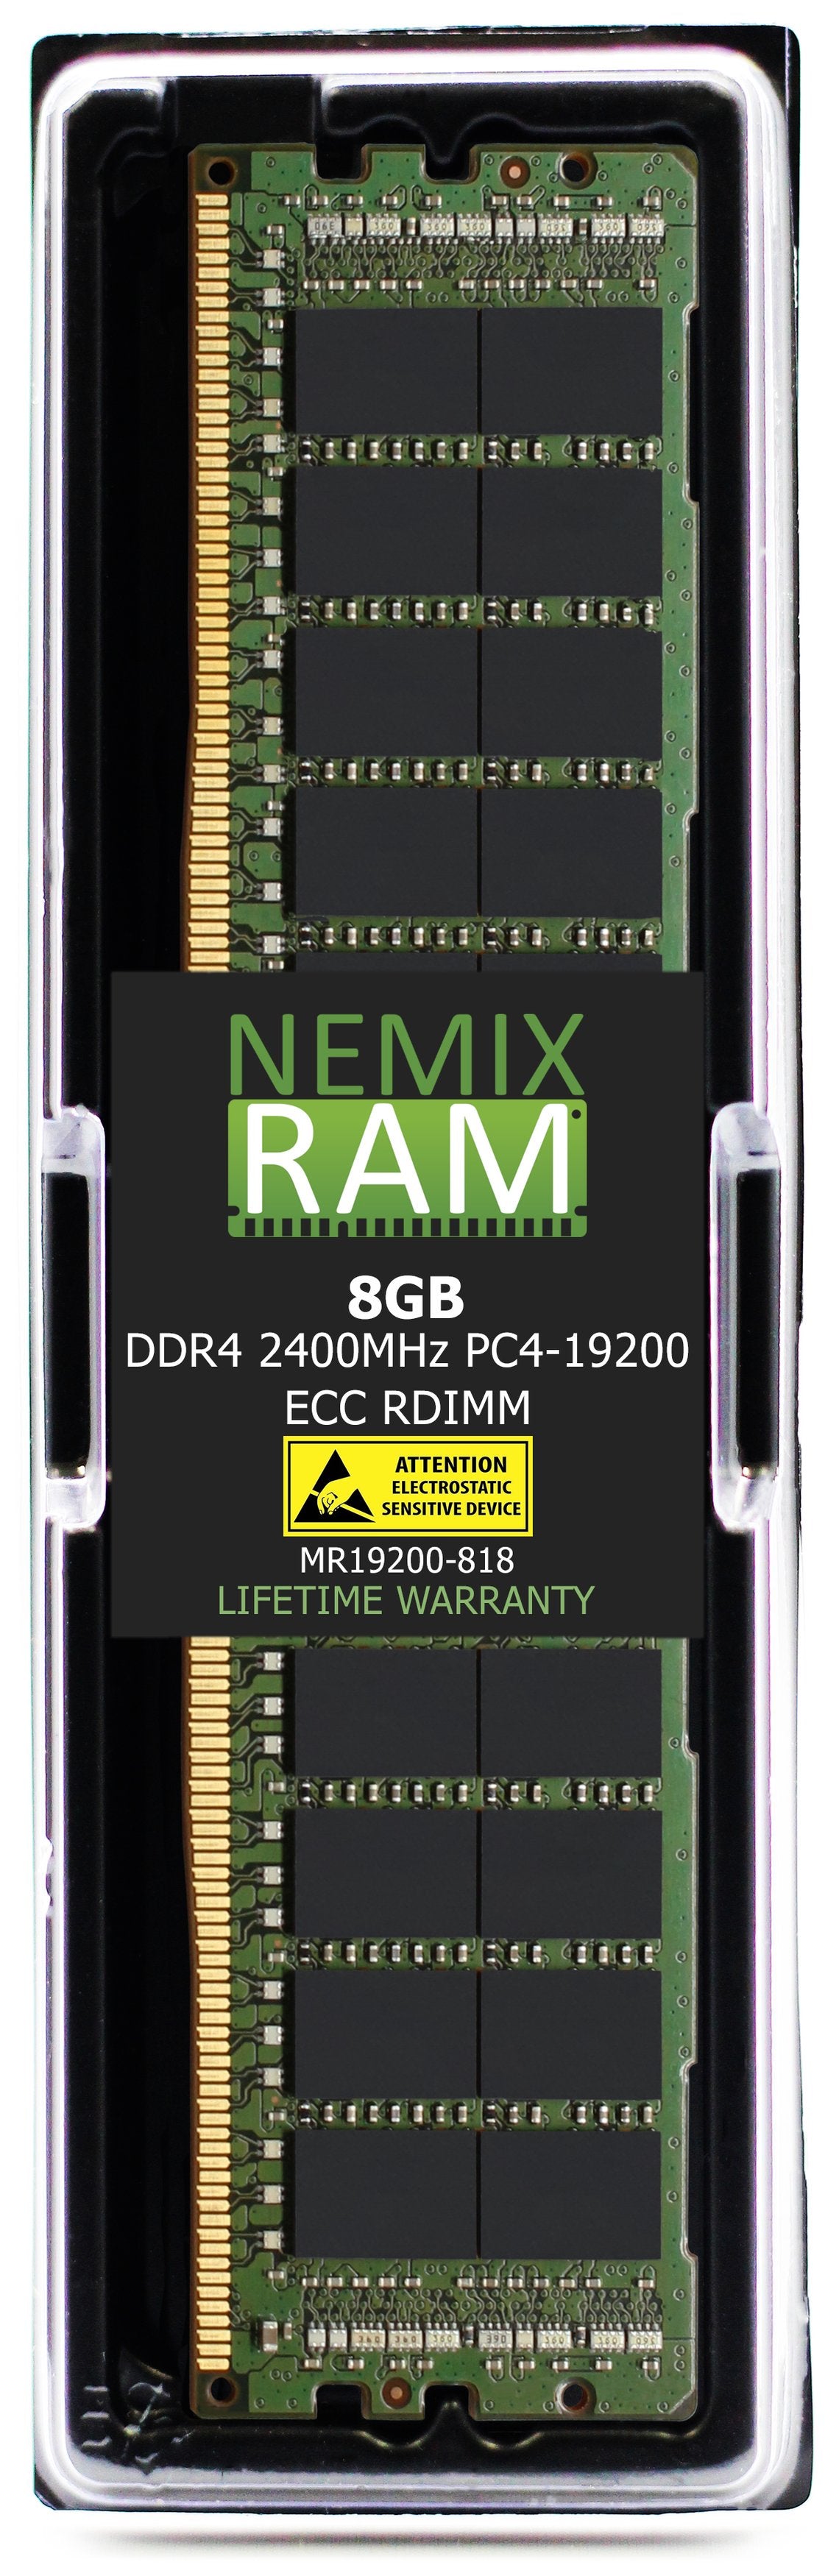 8GB DDR4 2400MHZ PC4-19200 RDIMM Compatible with Supermicro MEM-DR480L-CL03-ER24